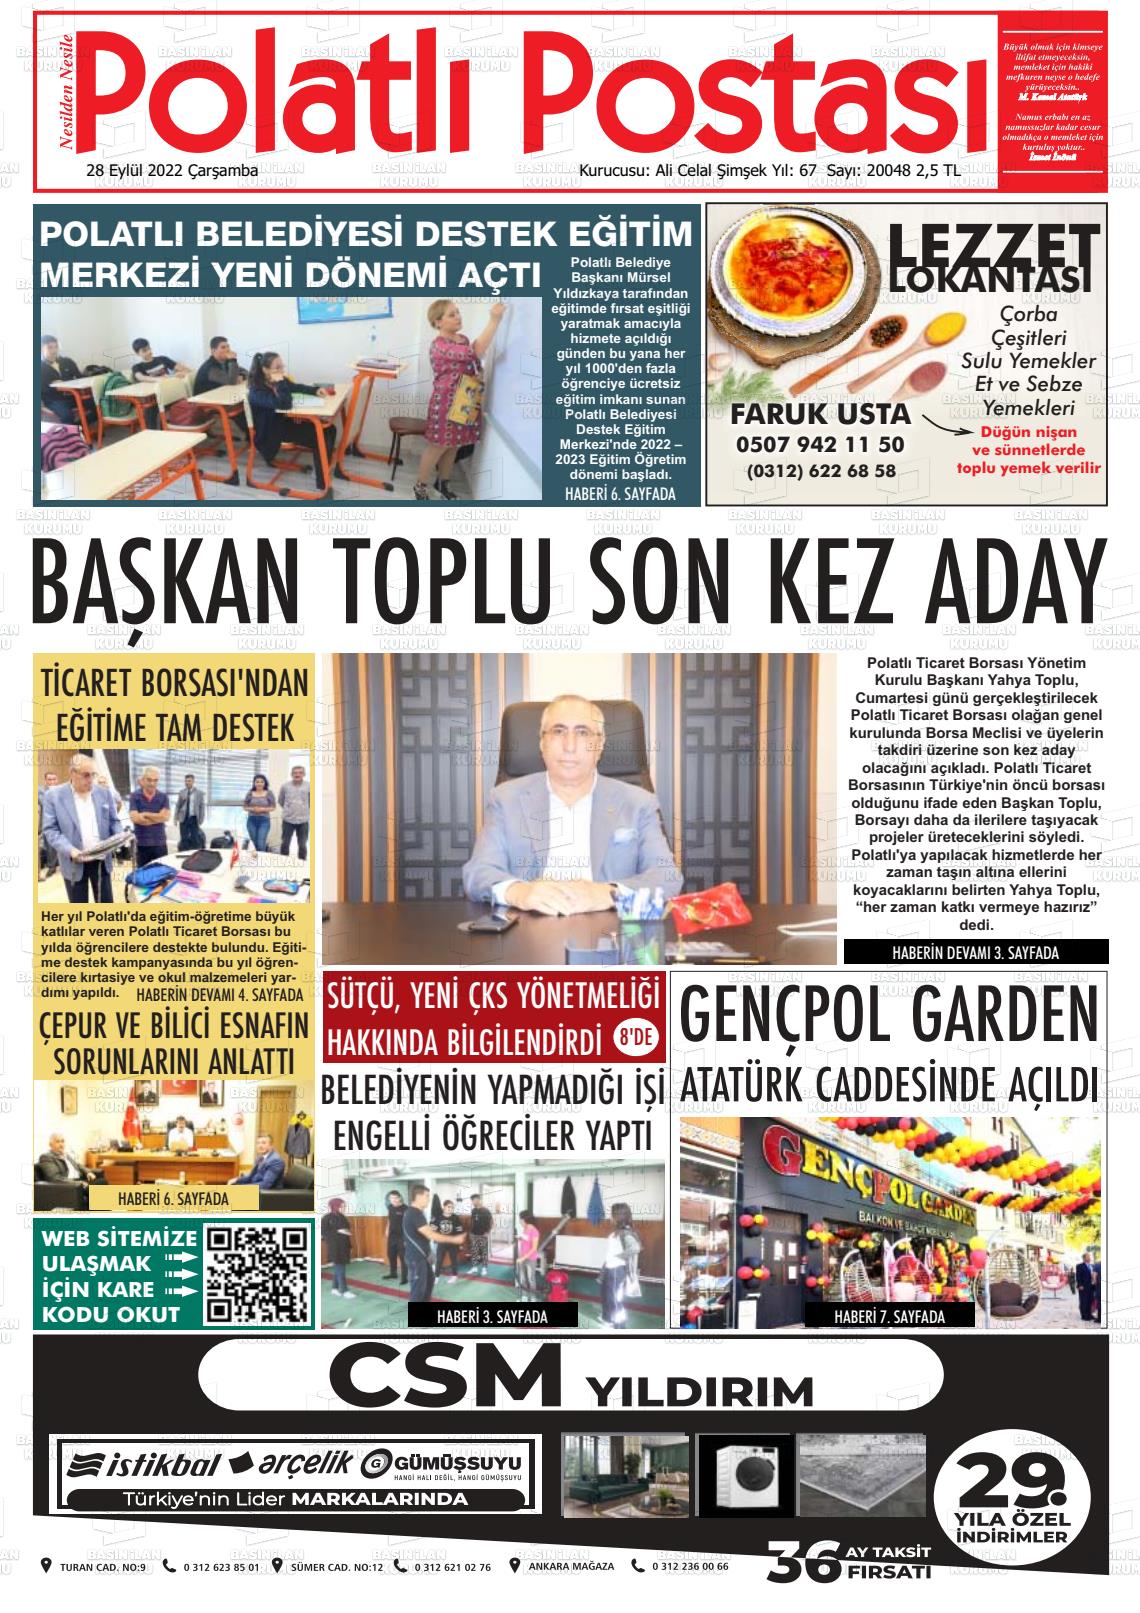 28 Eylül 2022 Polatlı Postası Gazete Manşeti